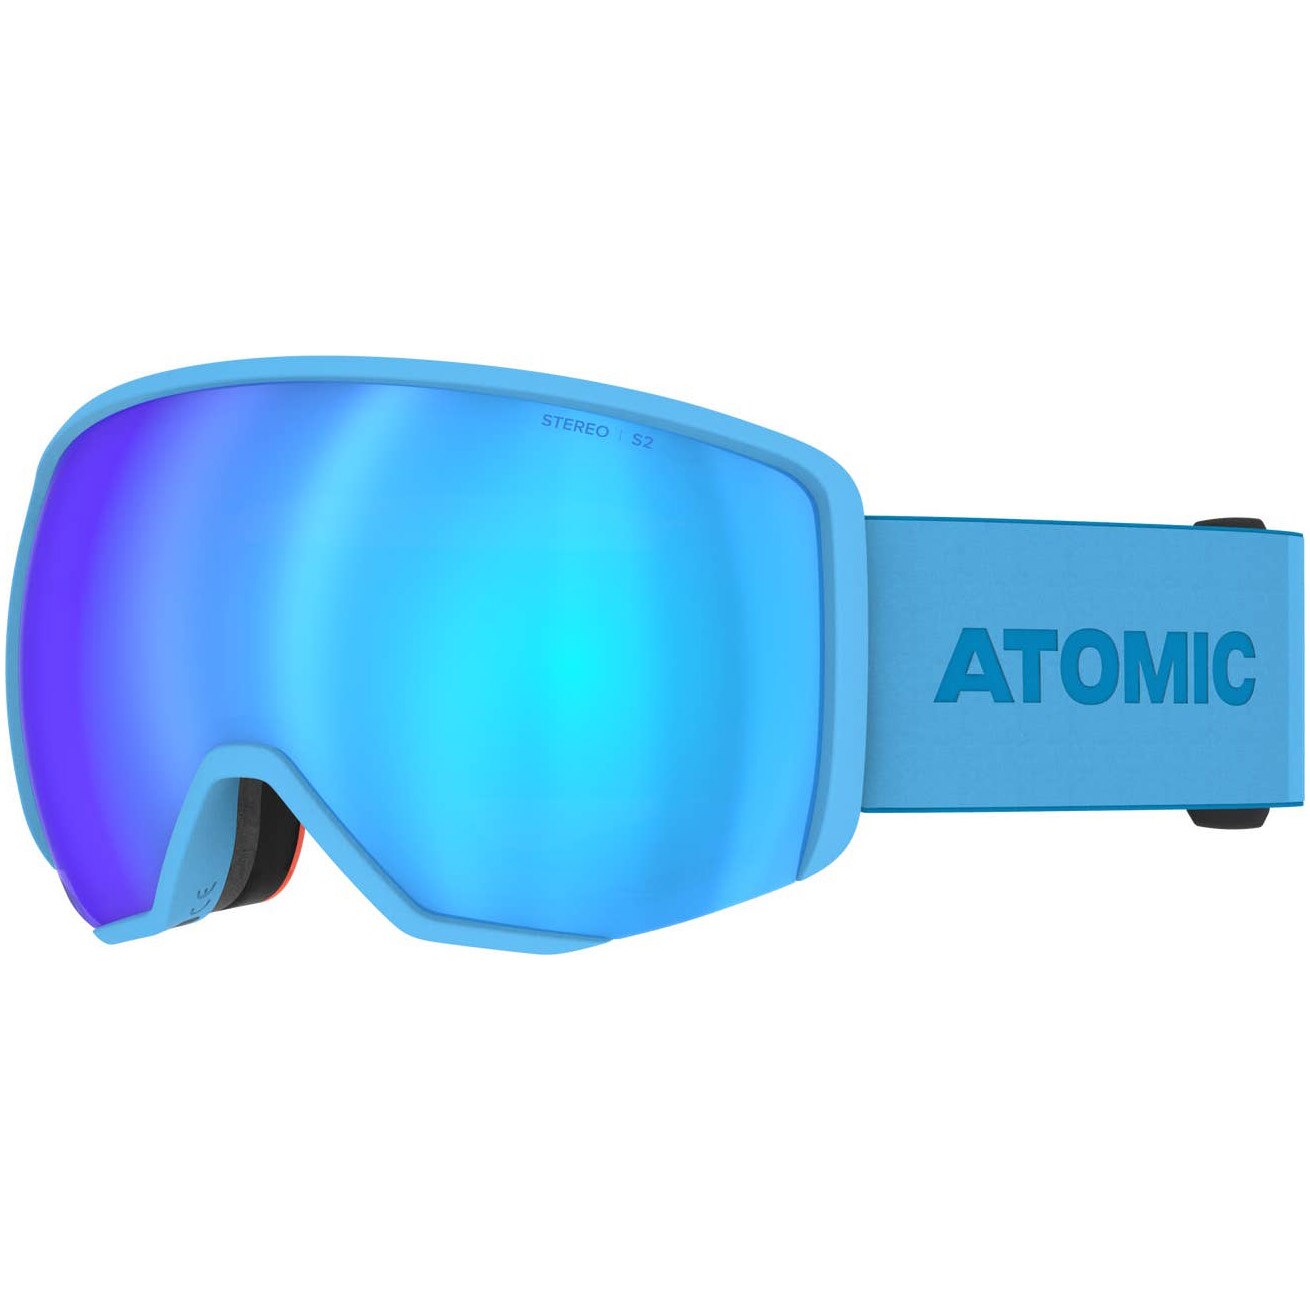 Fotografie Ochelari ski Atomic REVENT L STEREO, unisex, albastru